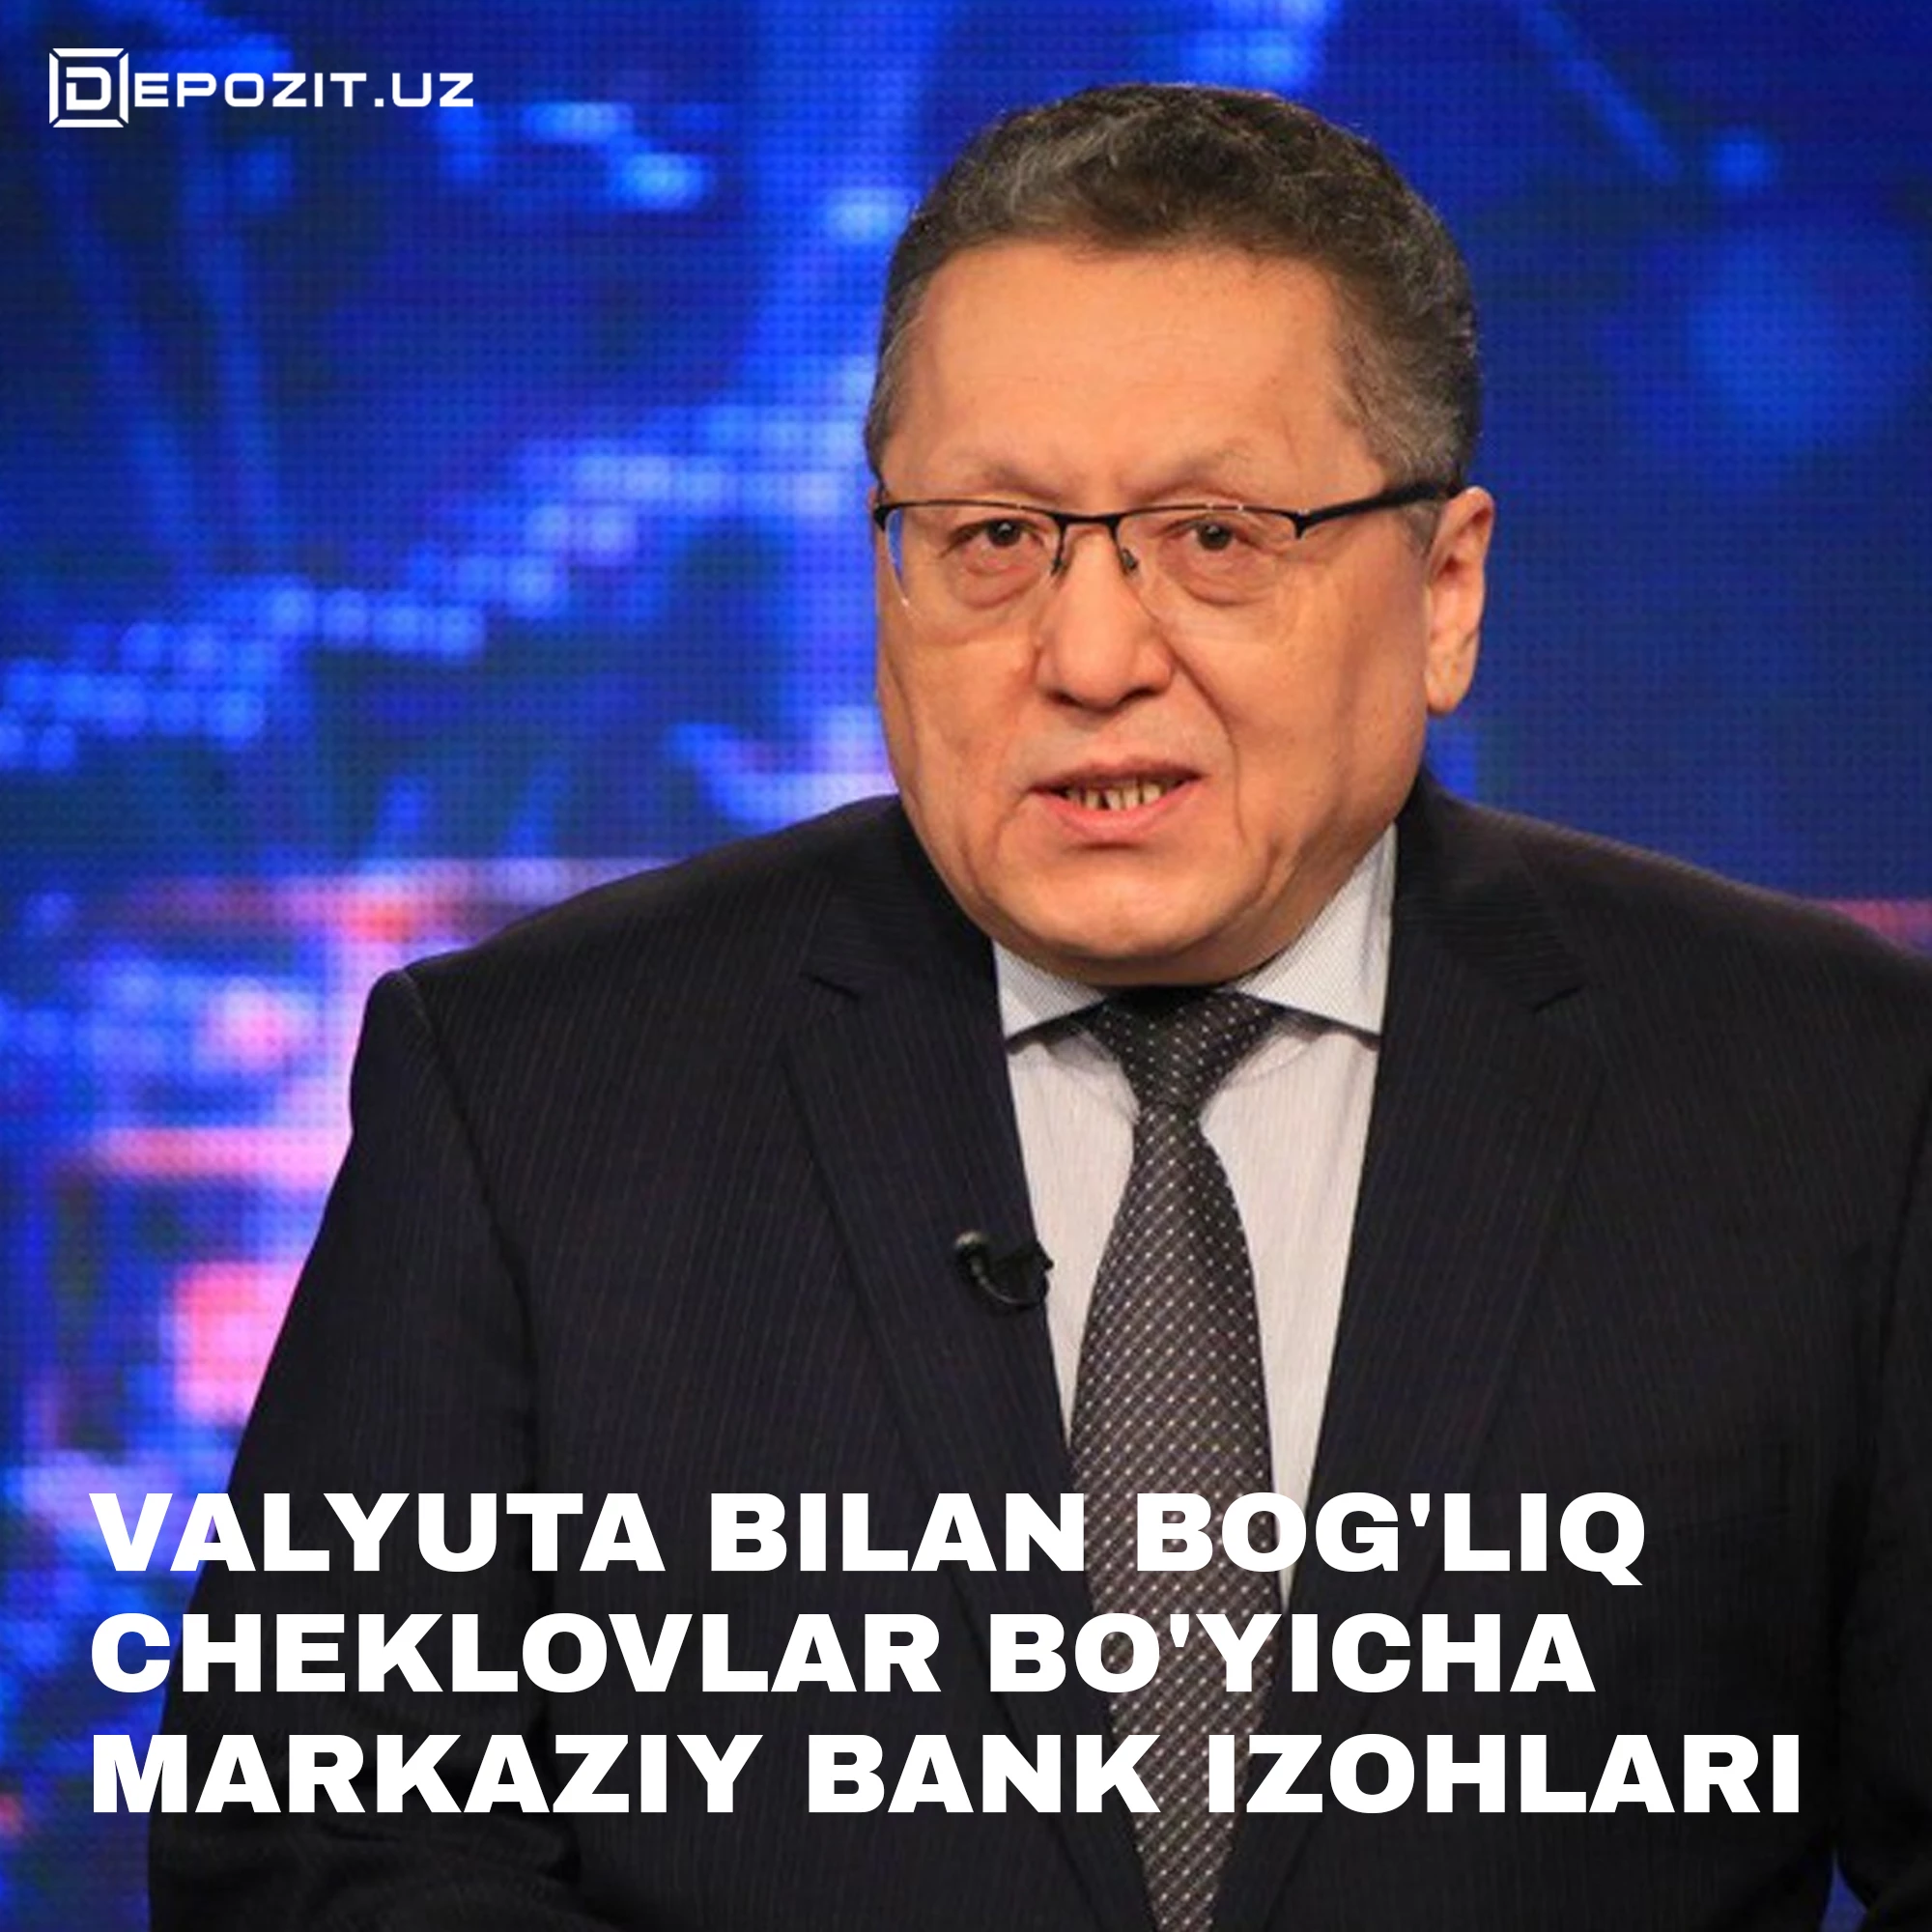 depozit.uz Центральный банк дал пояснения по вопросам валютных ограничений